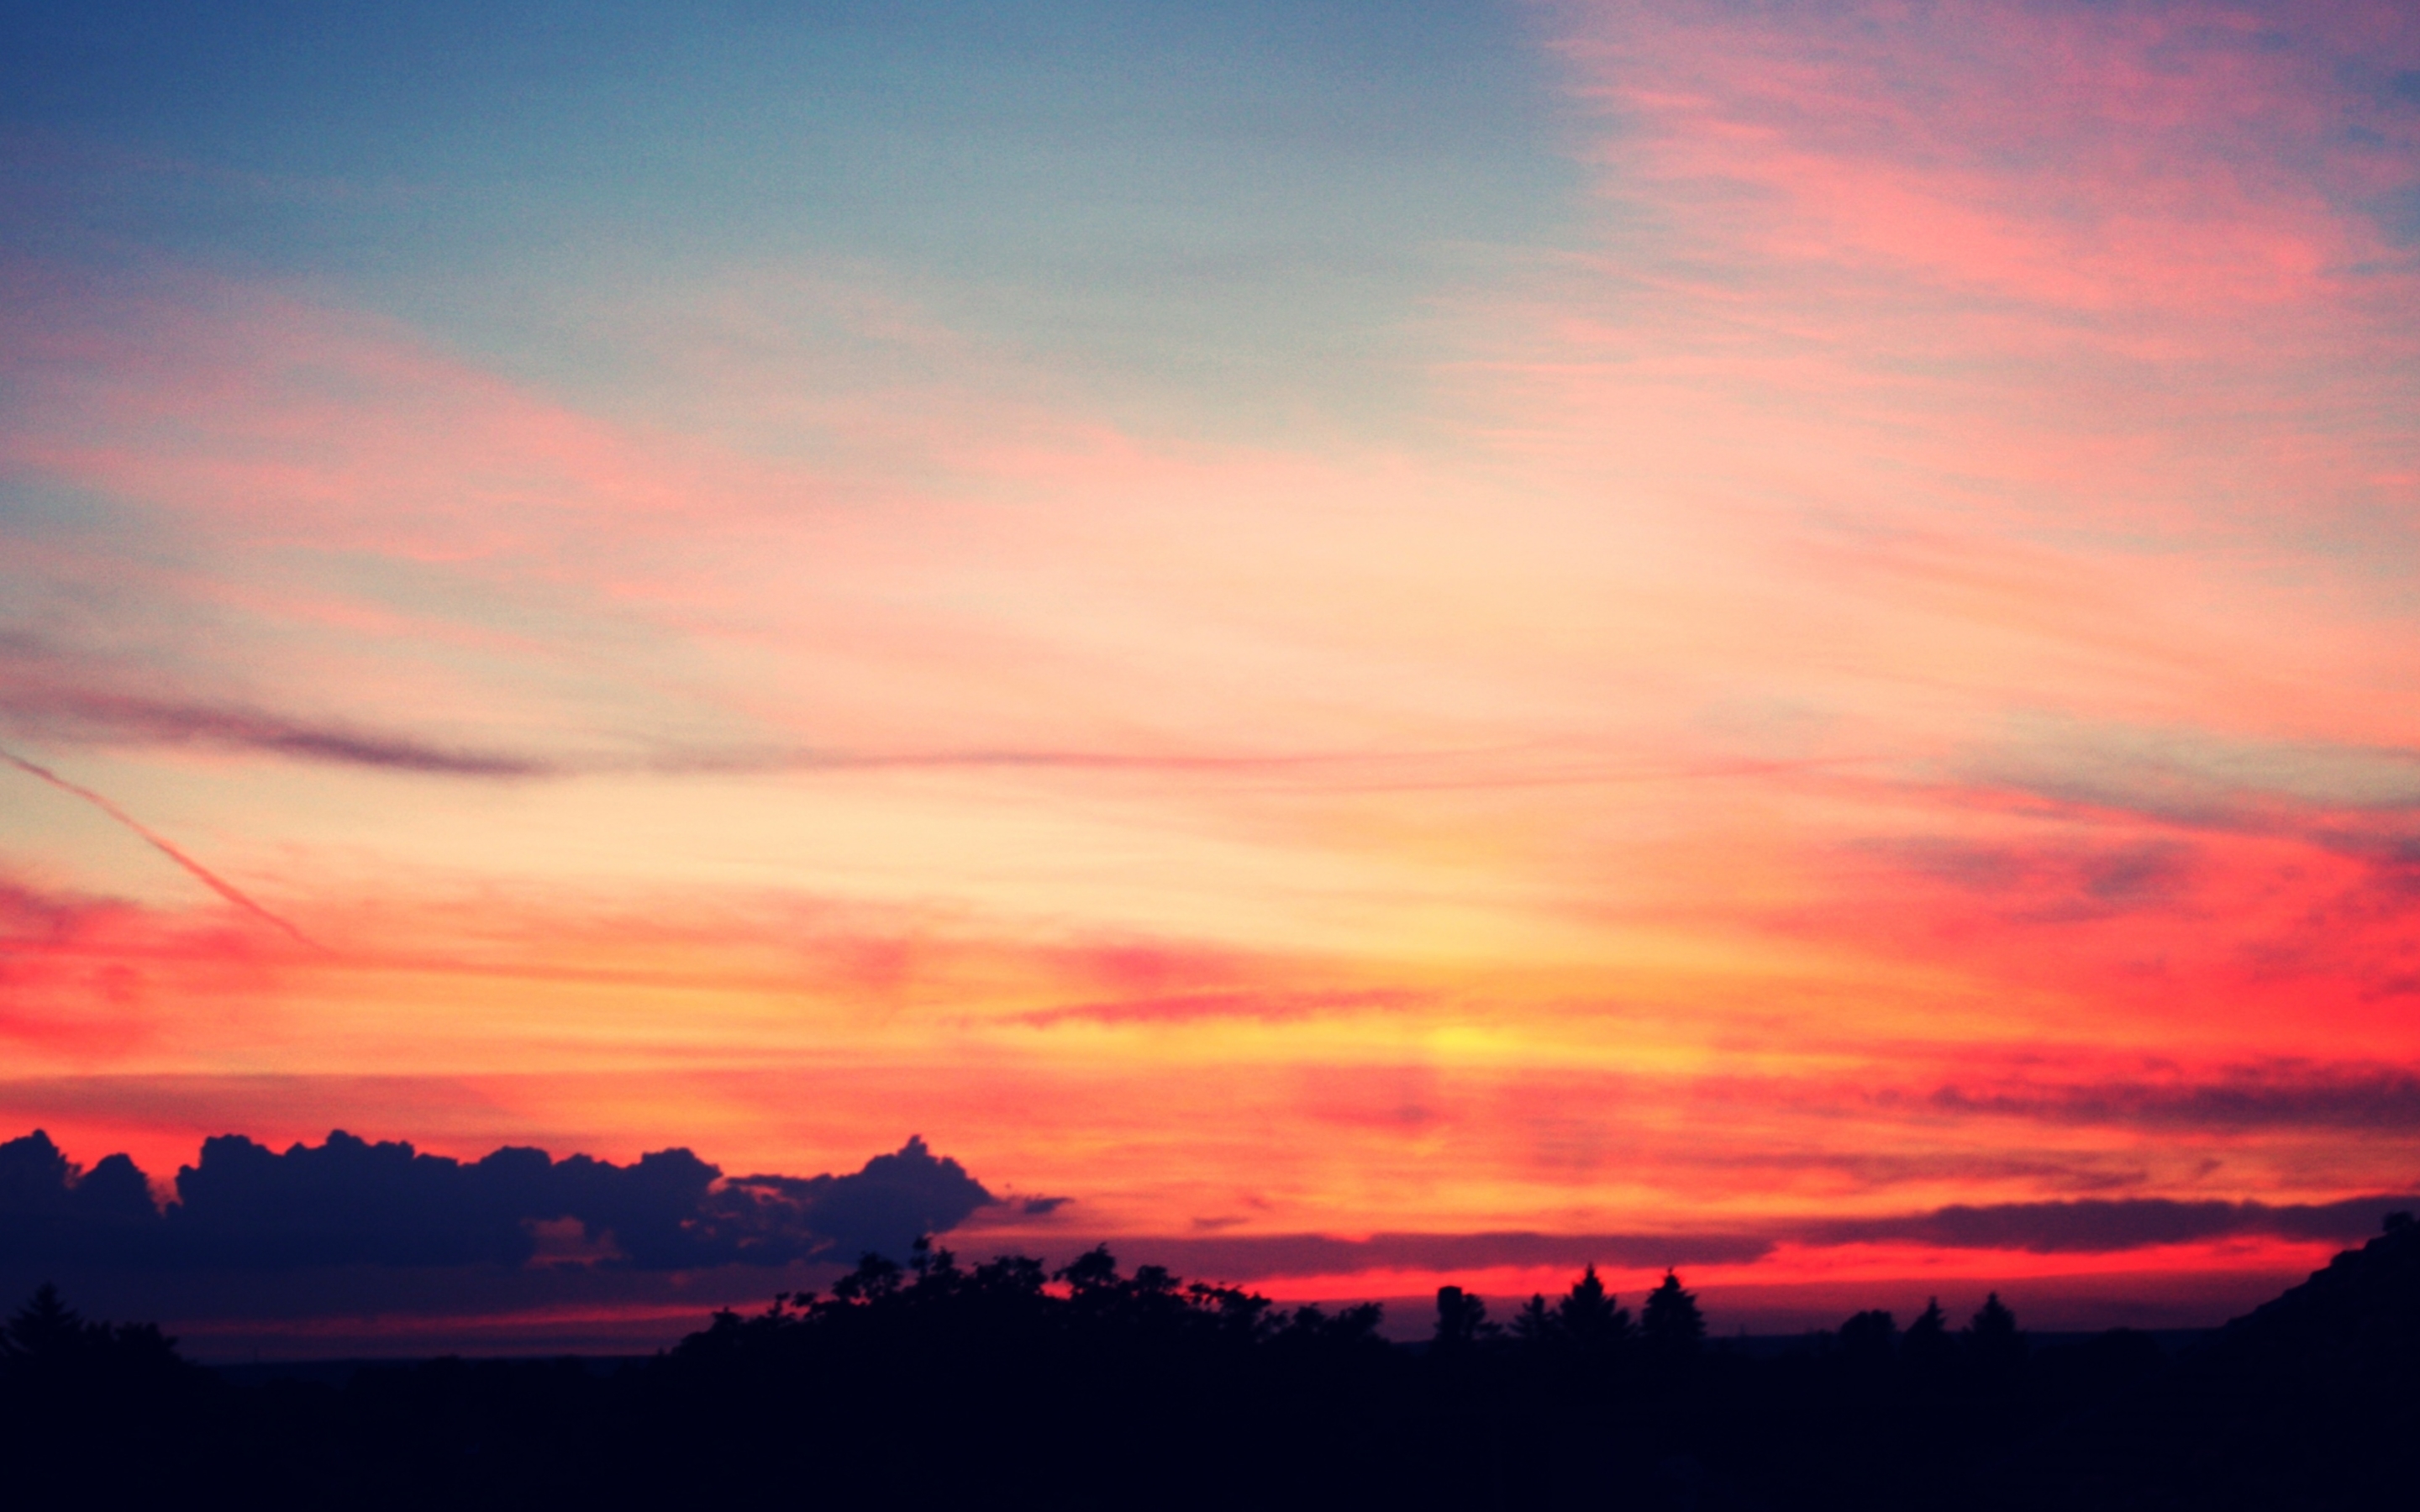 macbook pro retina wallpaper 2880x1800,sky,afterglow,red sky at morning,cloud,sunset